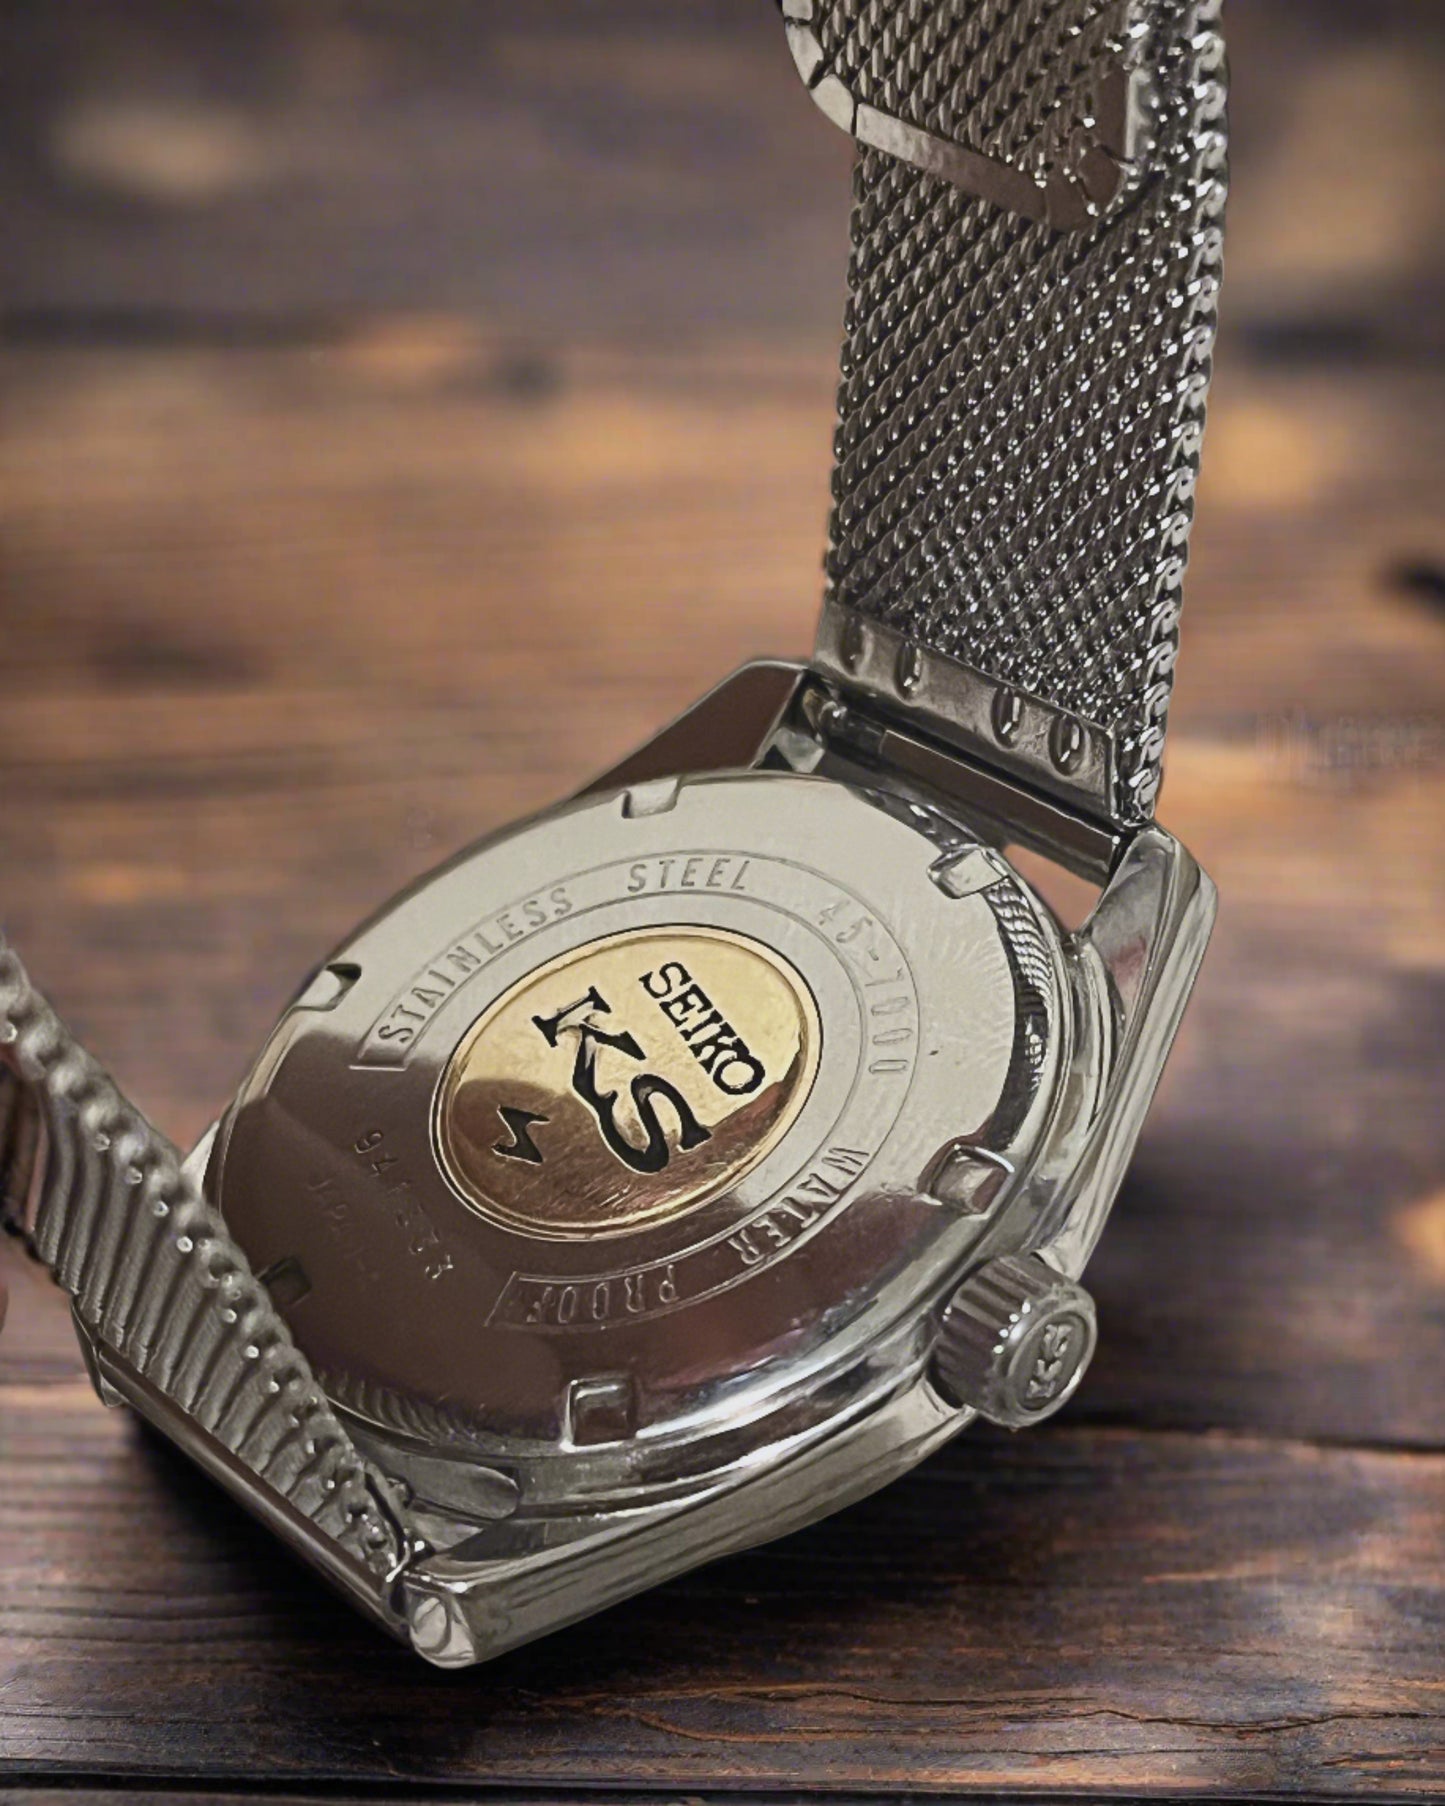 37mm Vintage King seiko Hi-beat 36000 bph manual winding watch